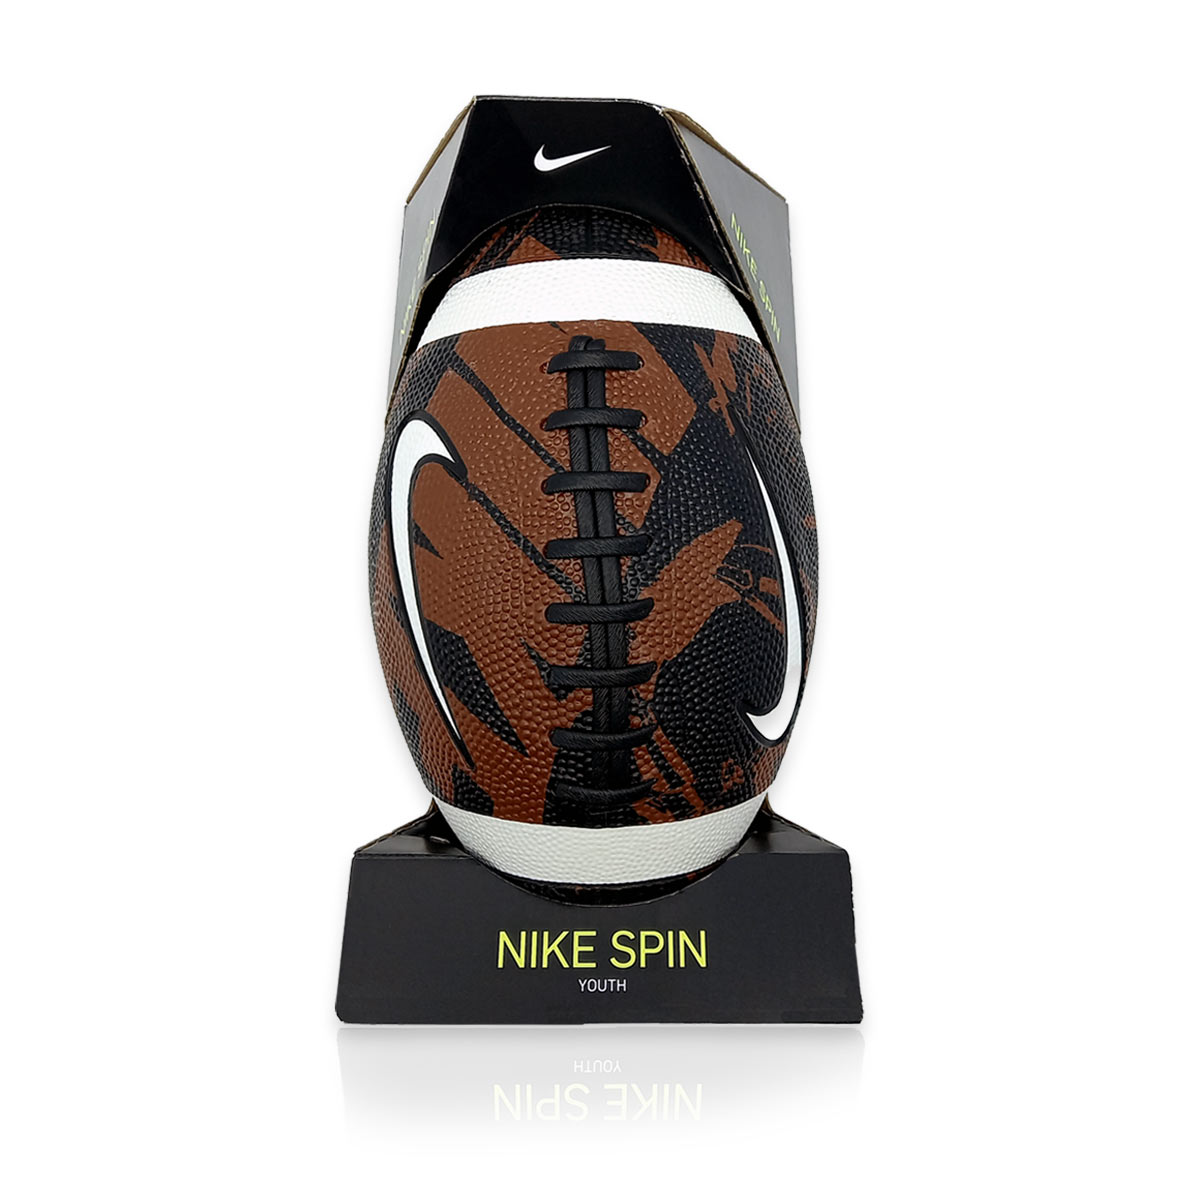 Balón Nike para fútbol americano